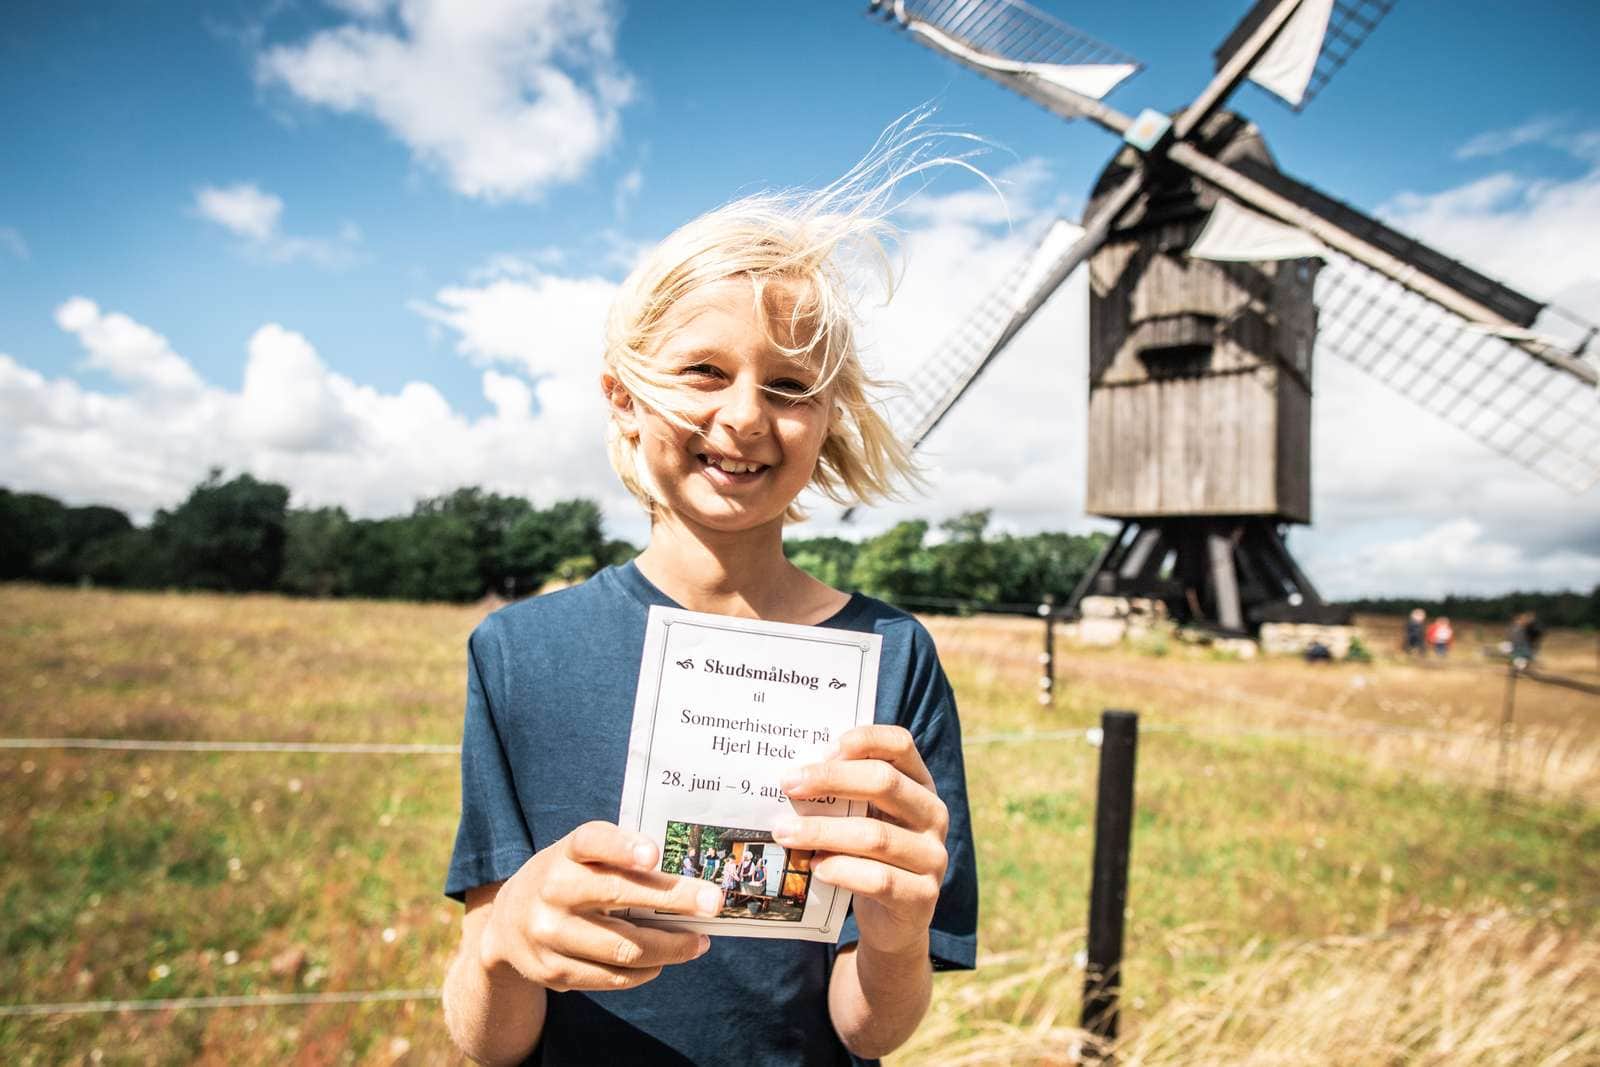 Oplevelser for hele familien på Frilandsmuseet Hjerl Hede - tag på en tidsrejse. Foto: Flying October/VisitNordvestkysten